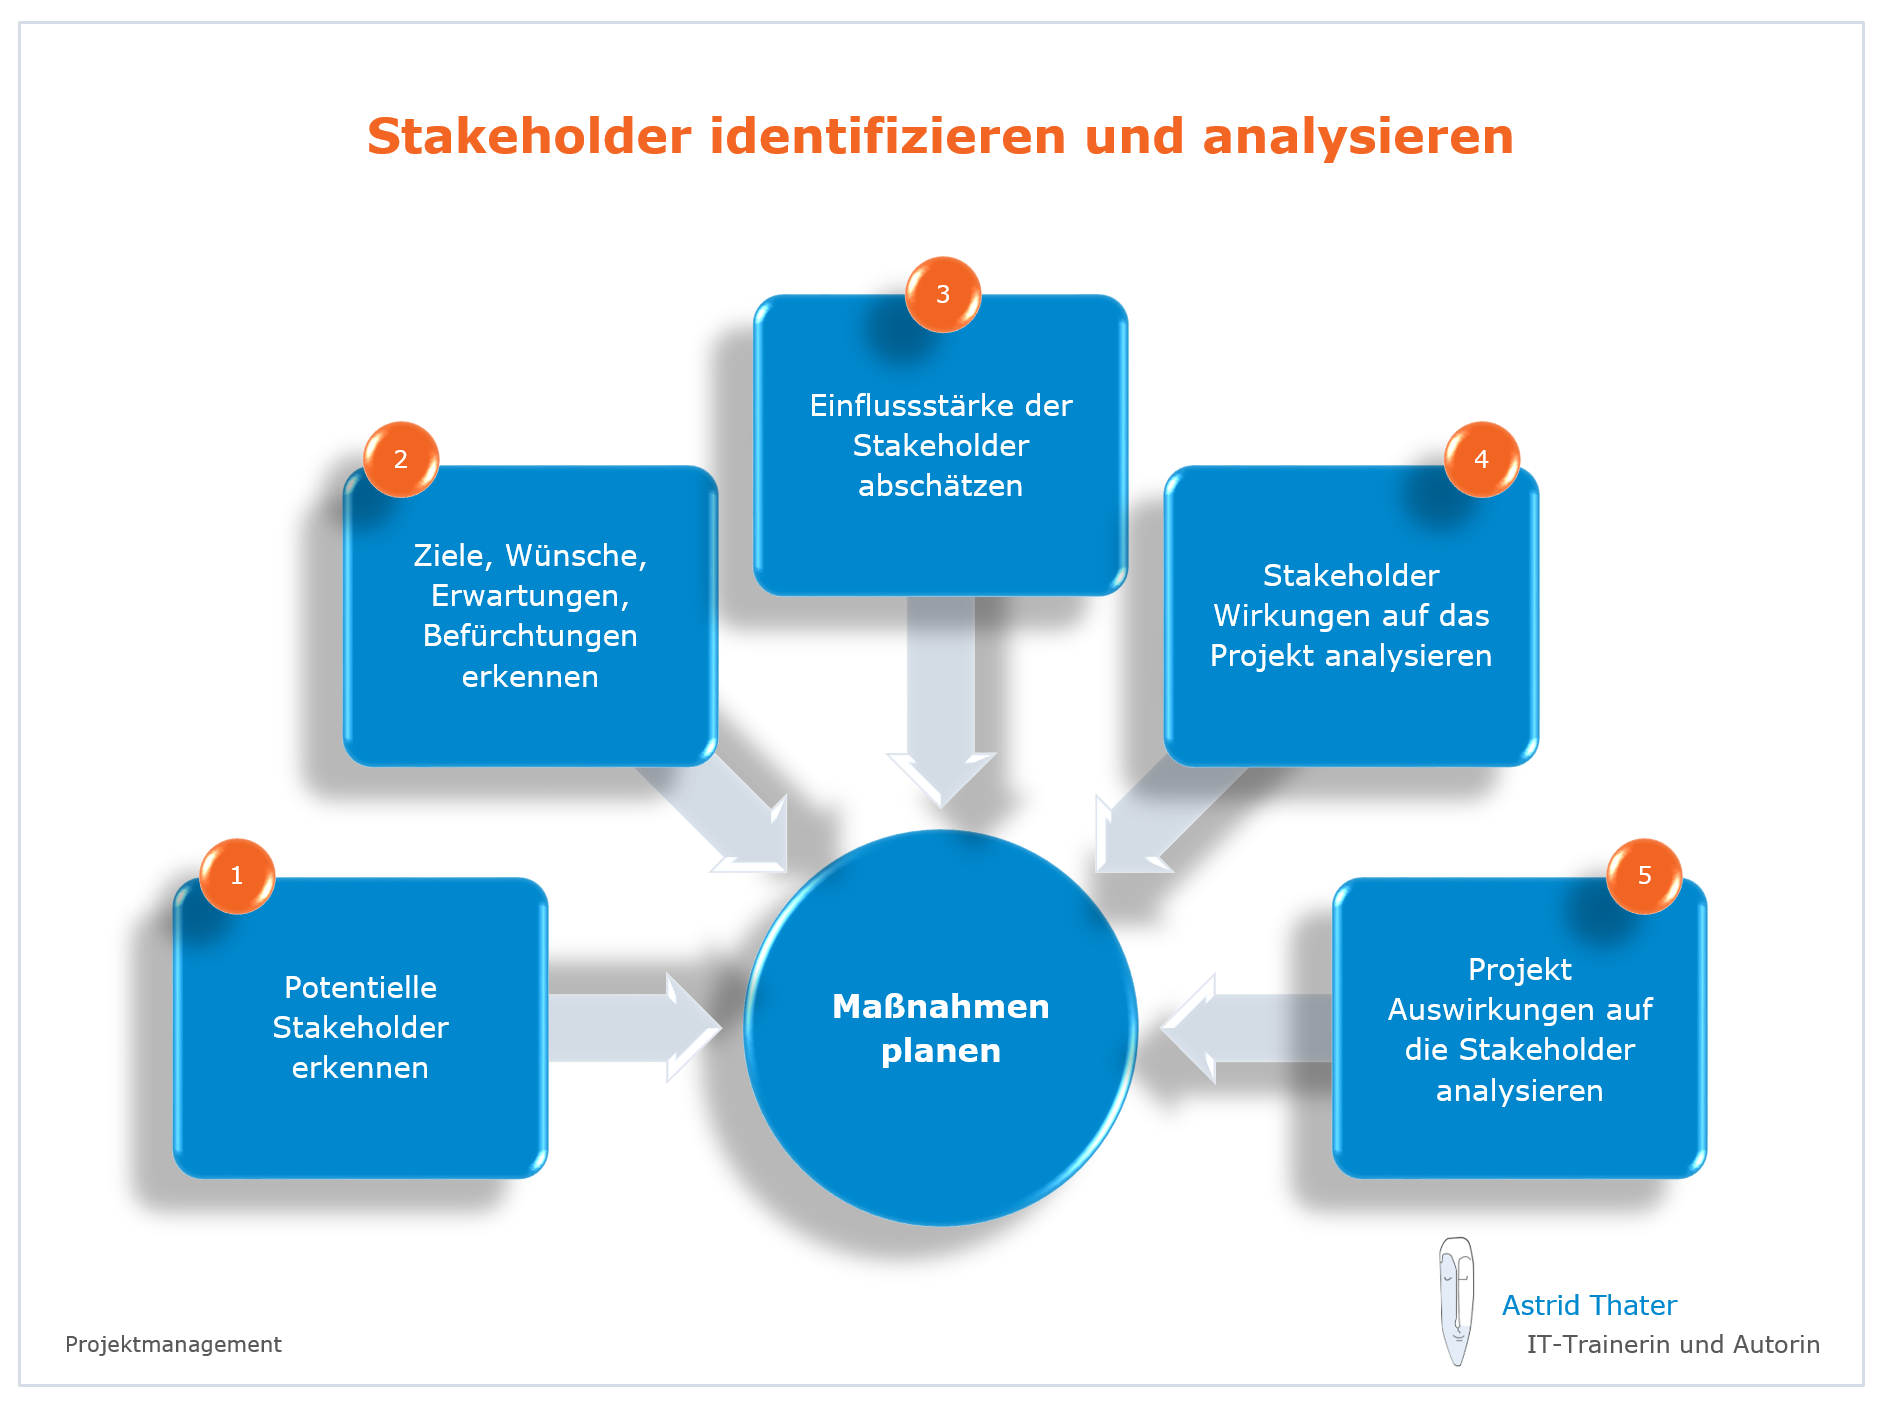 Projektmanagement - Stakeholder identifizieren und analysieren